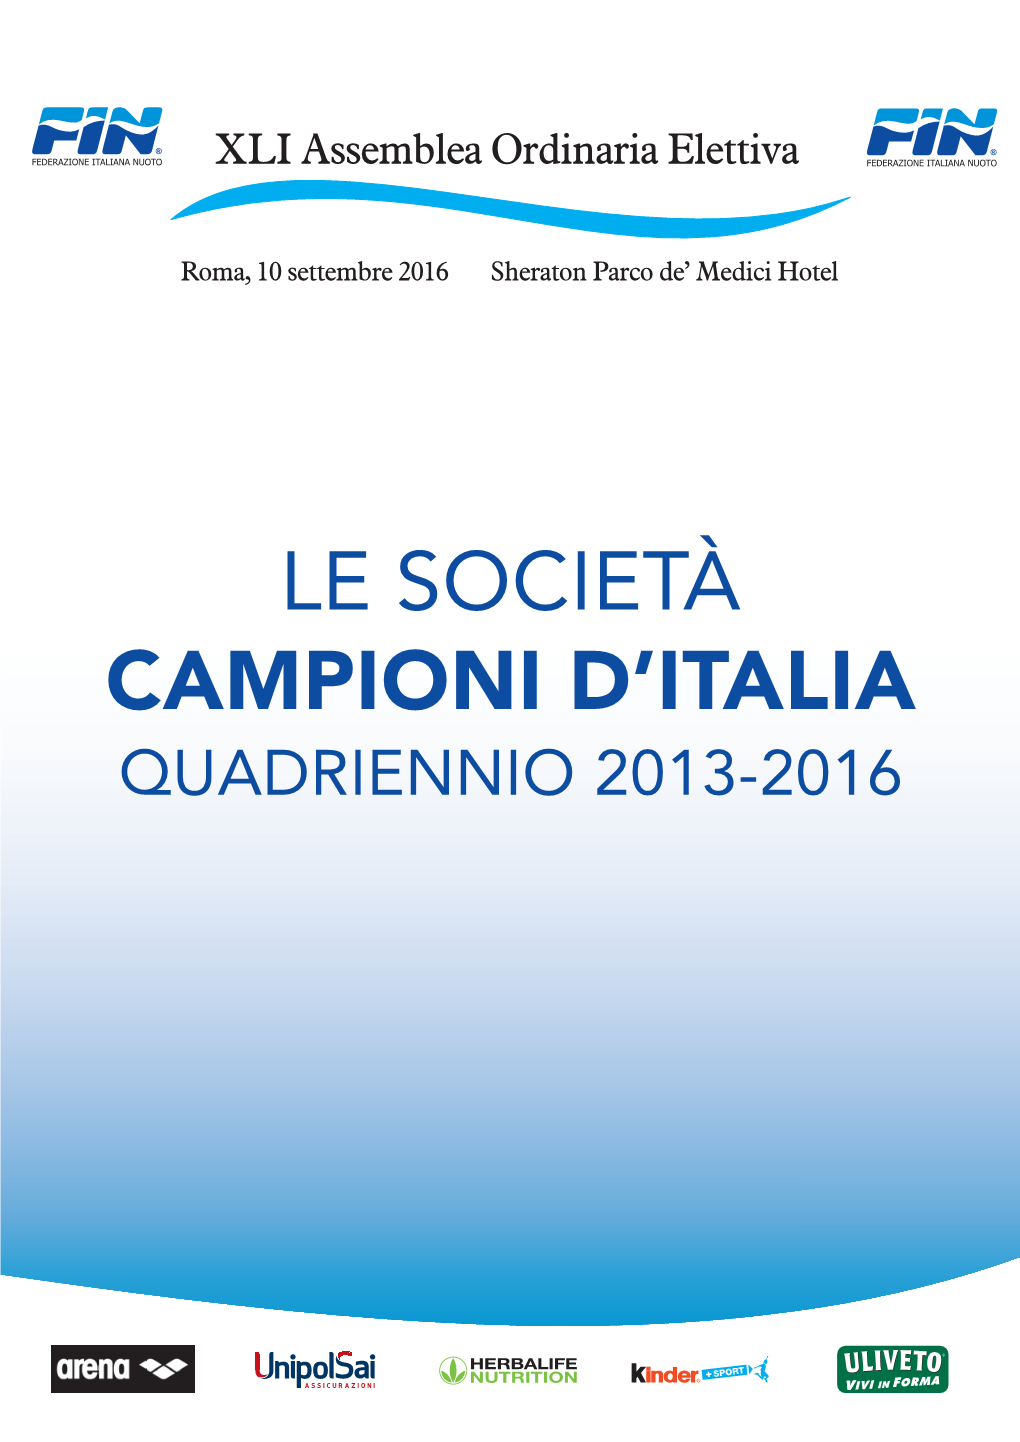 Le Società Campioni D'italia